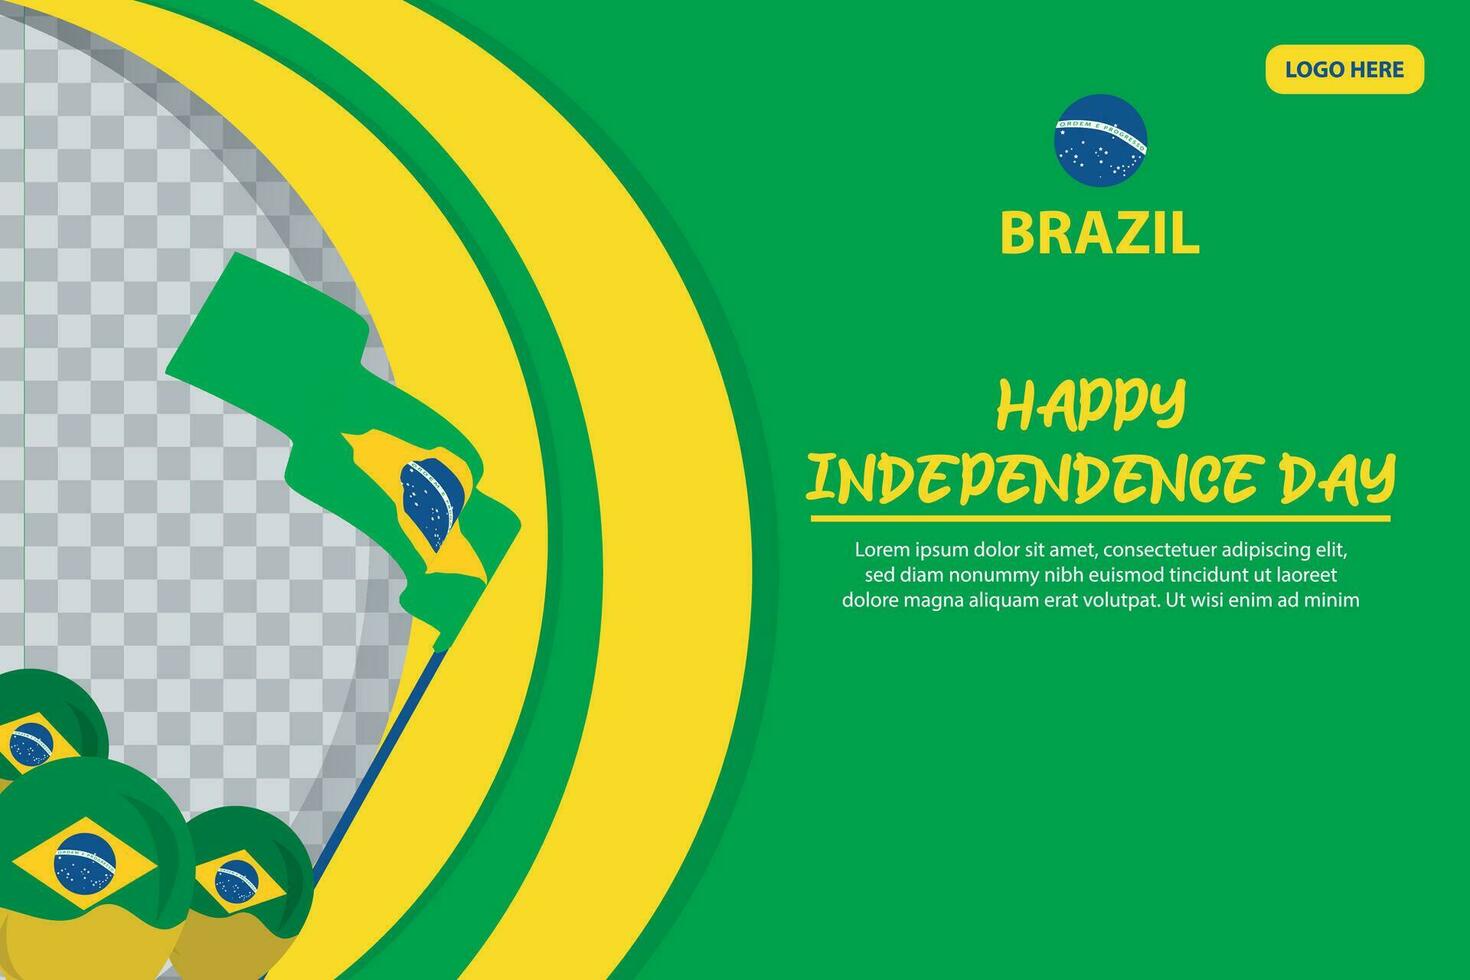 Brasilien oberoende dag 7 september firande vektor mall baner, social media posta, flygblad eller hälsning kort med gul grön tema och flagga. vektor illustration